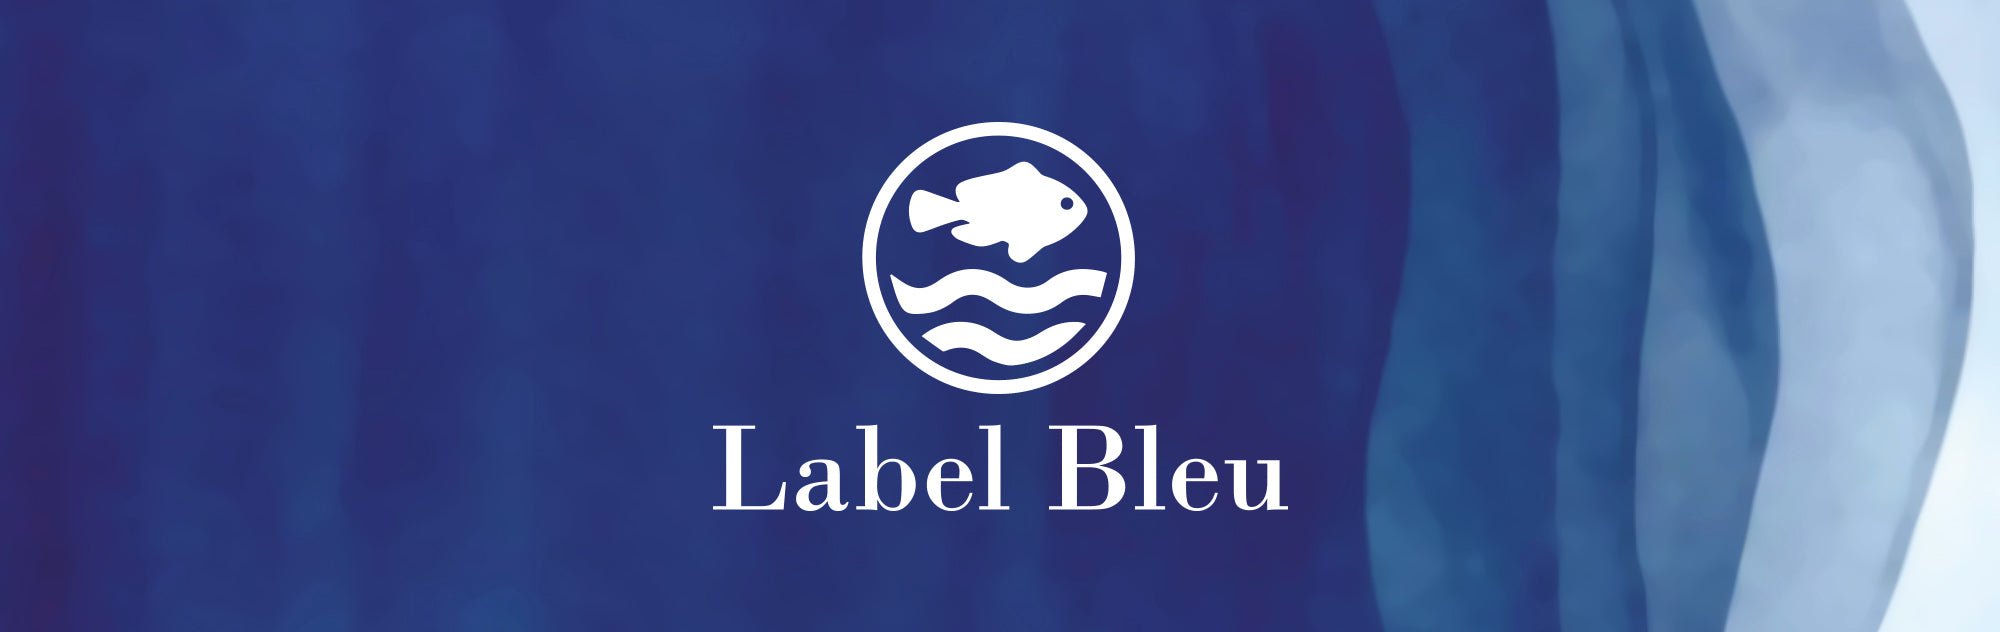 Label Bleu - Mat de Misaine